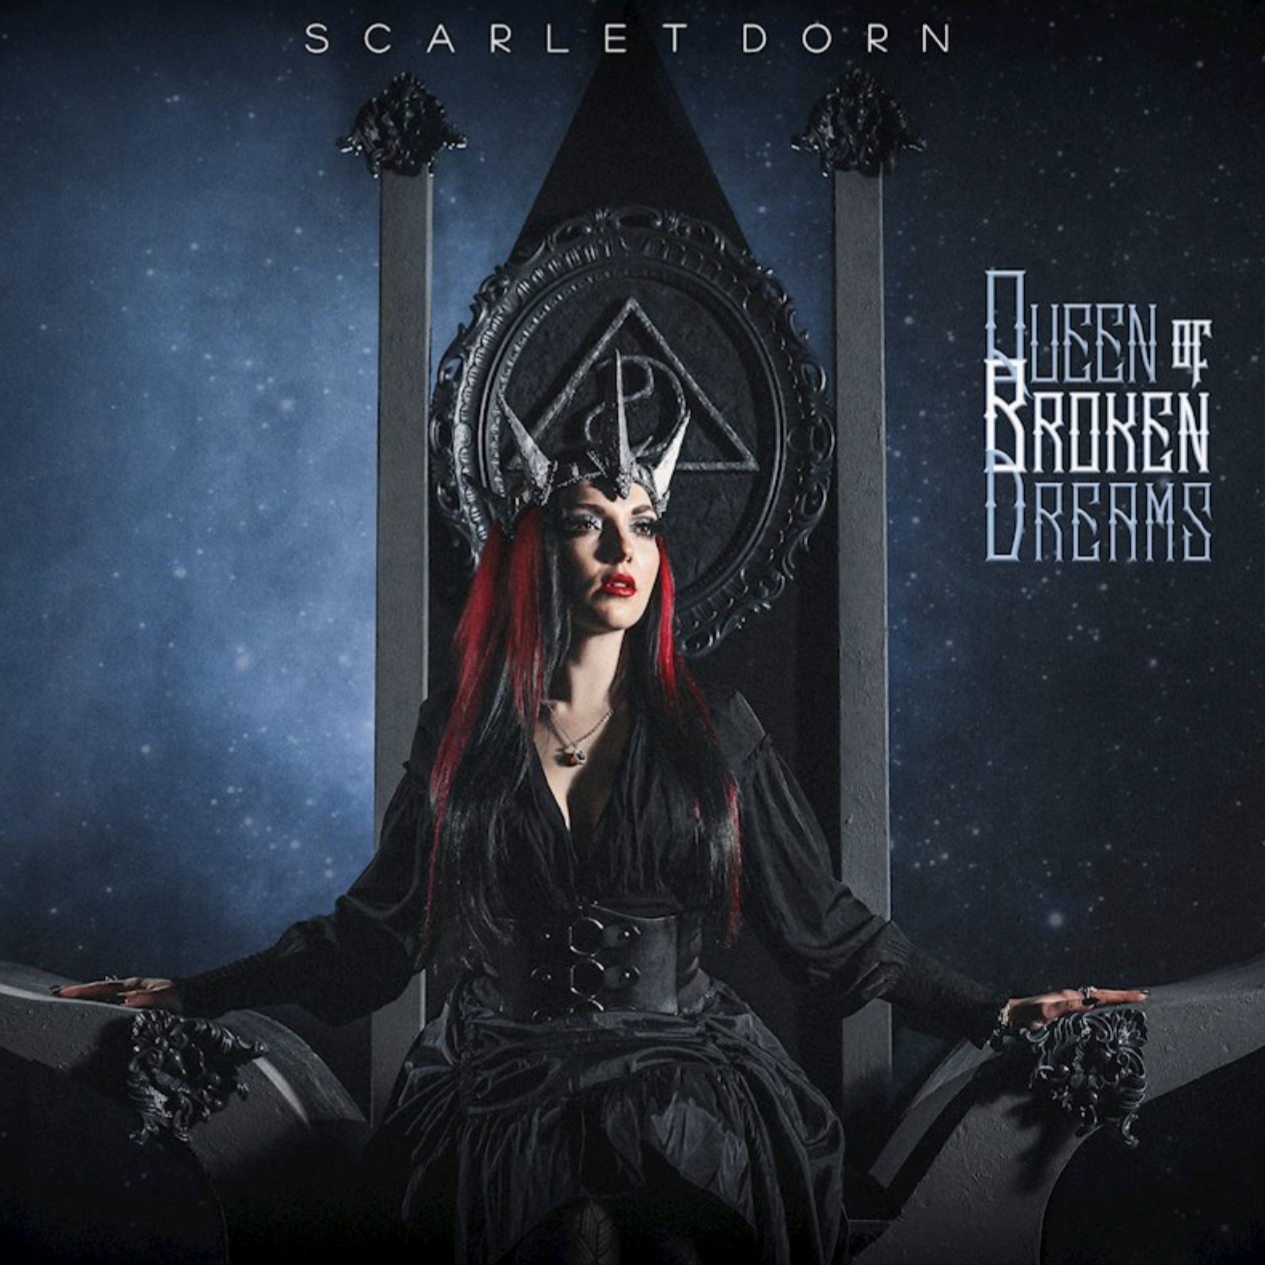 SCARLET DORN veröffentlichen zweite neue Single / Video „Unstill Life“Das neue Album „Queen Of Broken Dreams“ erscheint am 30